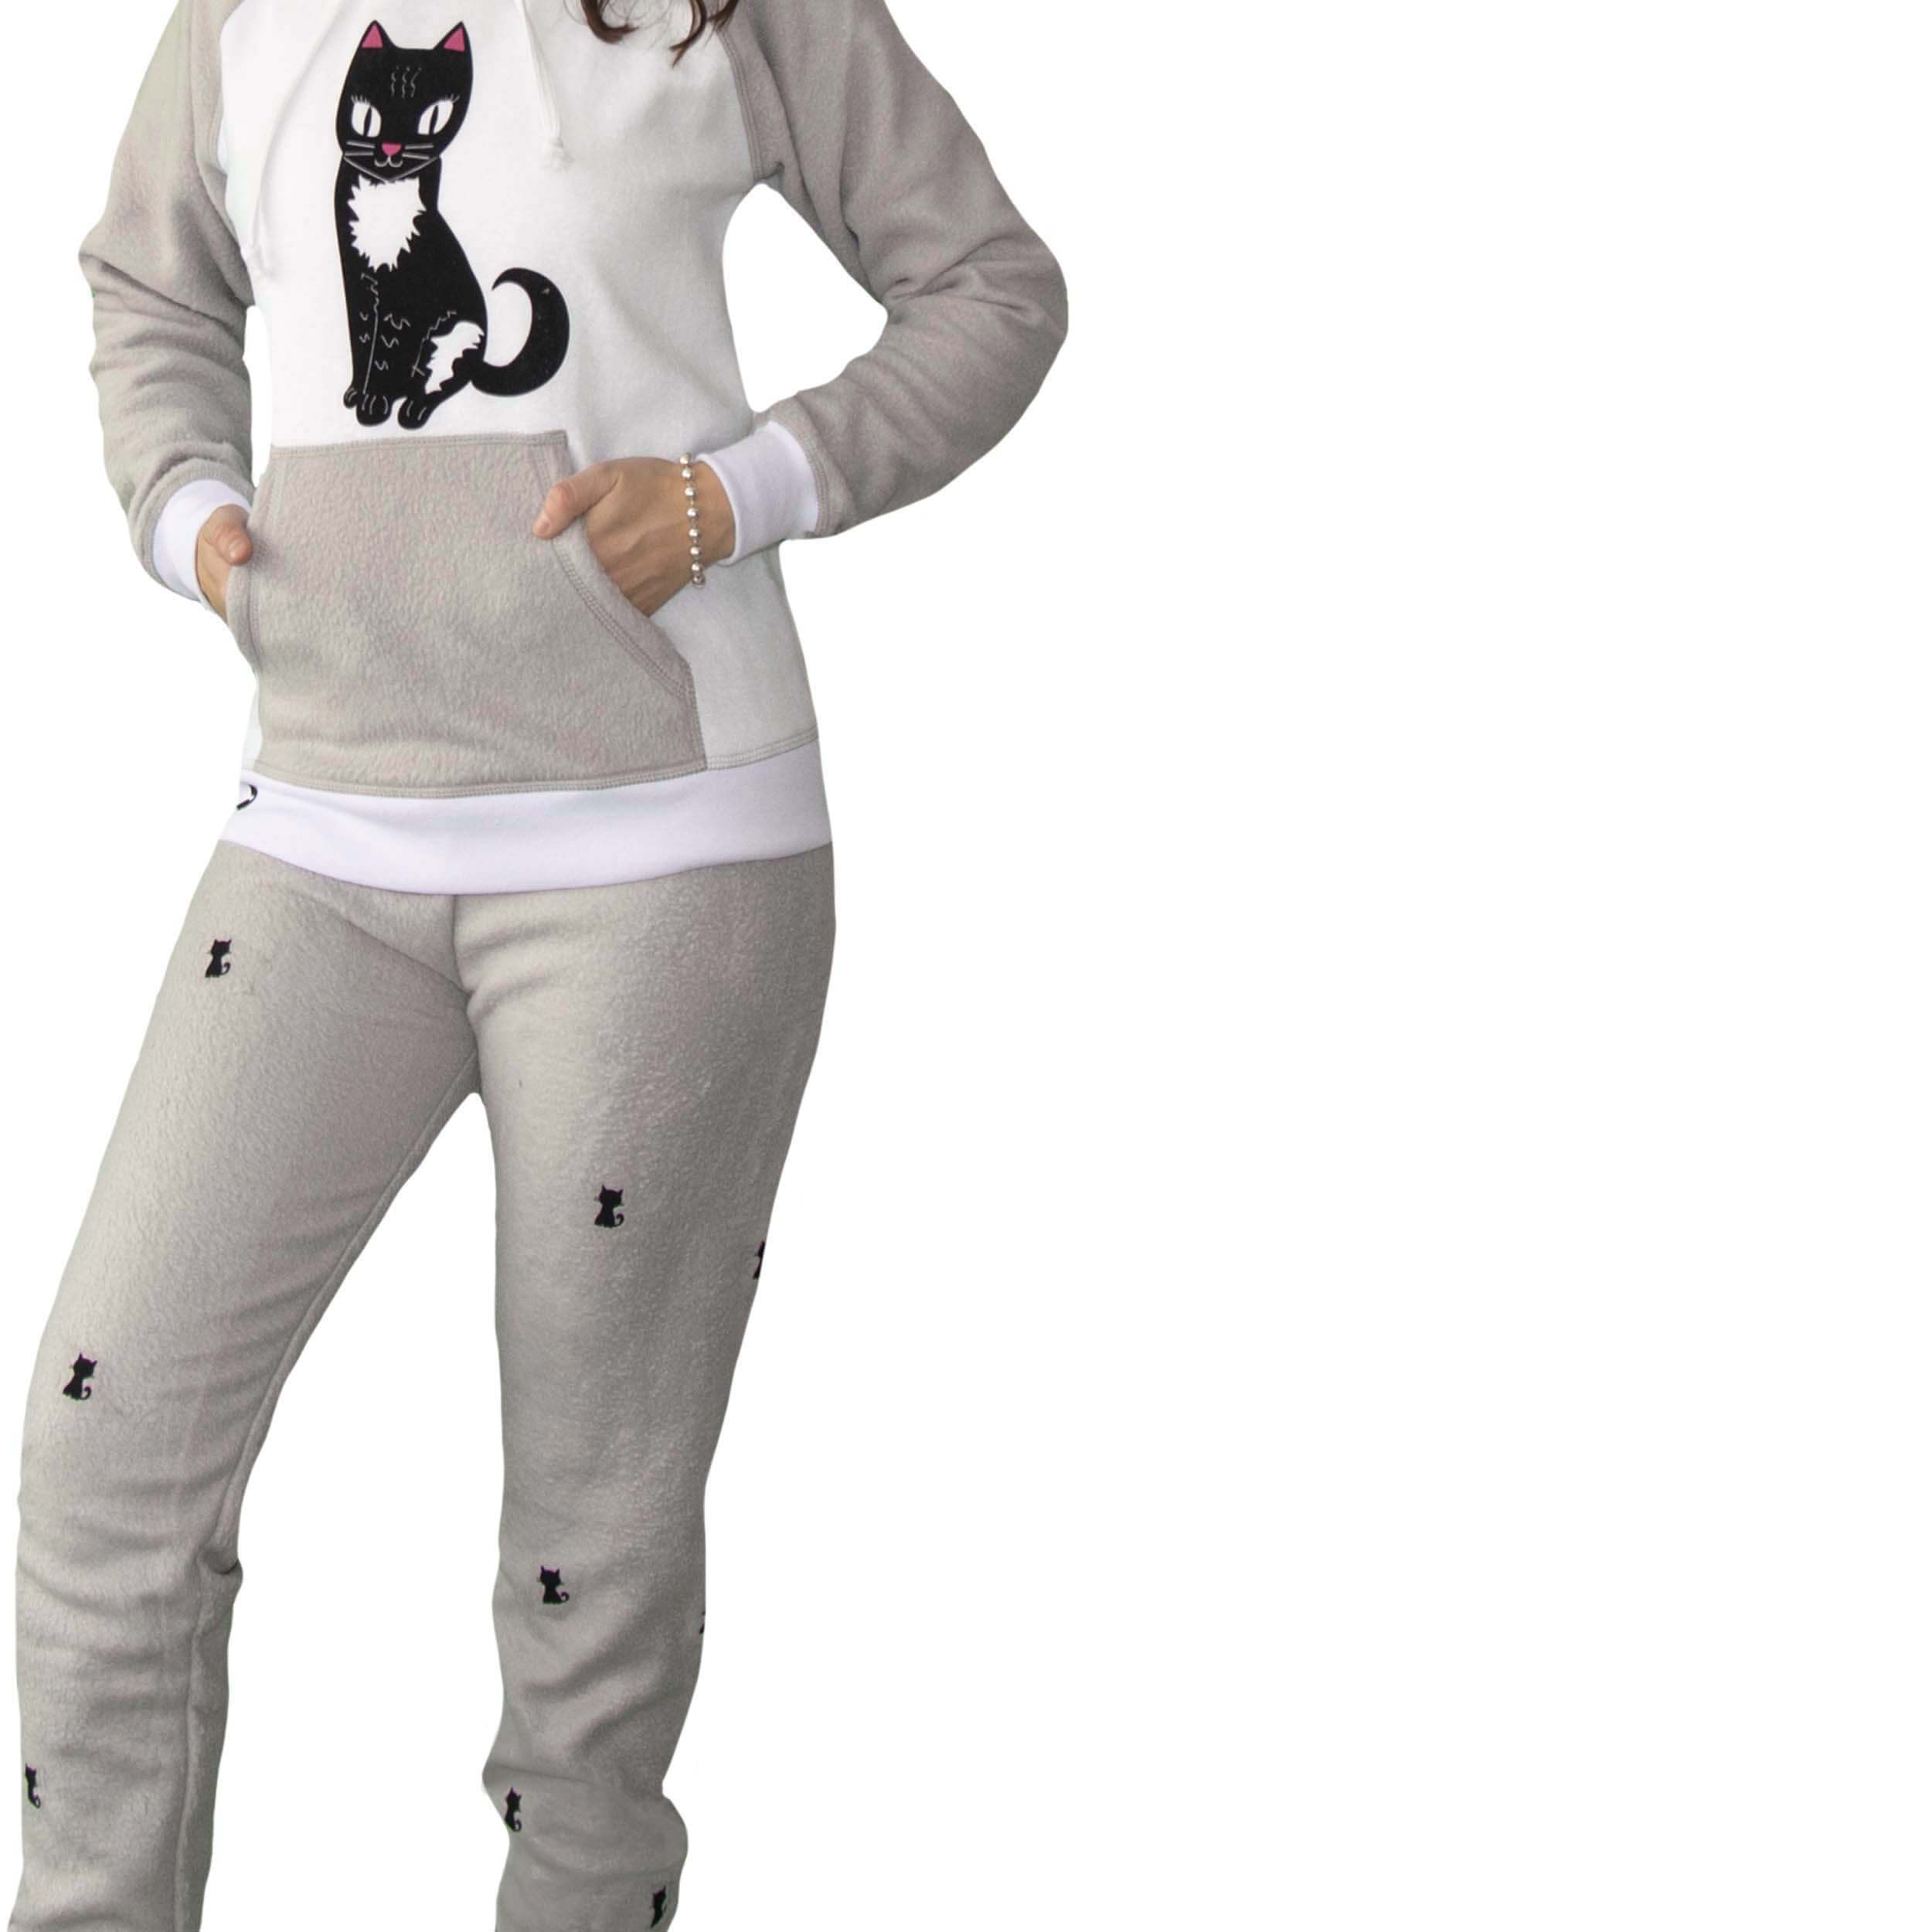 Detalle de Mujer vistiendo la Pijama para Mujer Gris Perla estampada con un gato negro de ojos grandes llamado gato bandido en el pecho